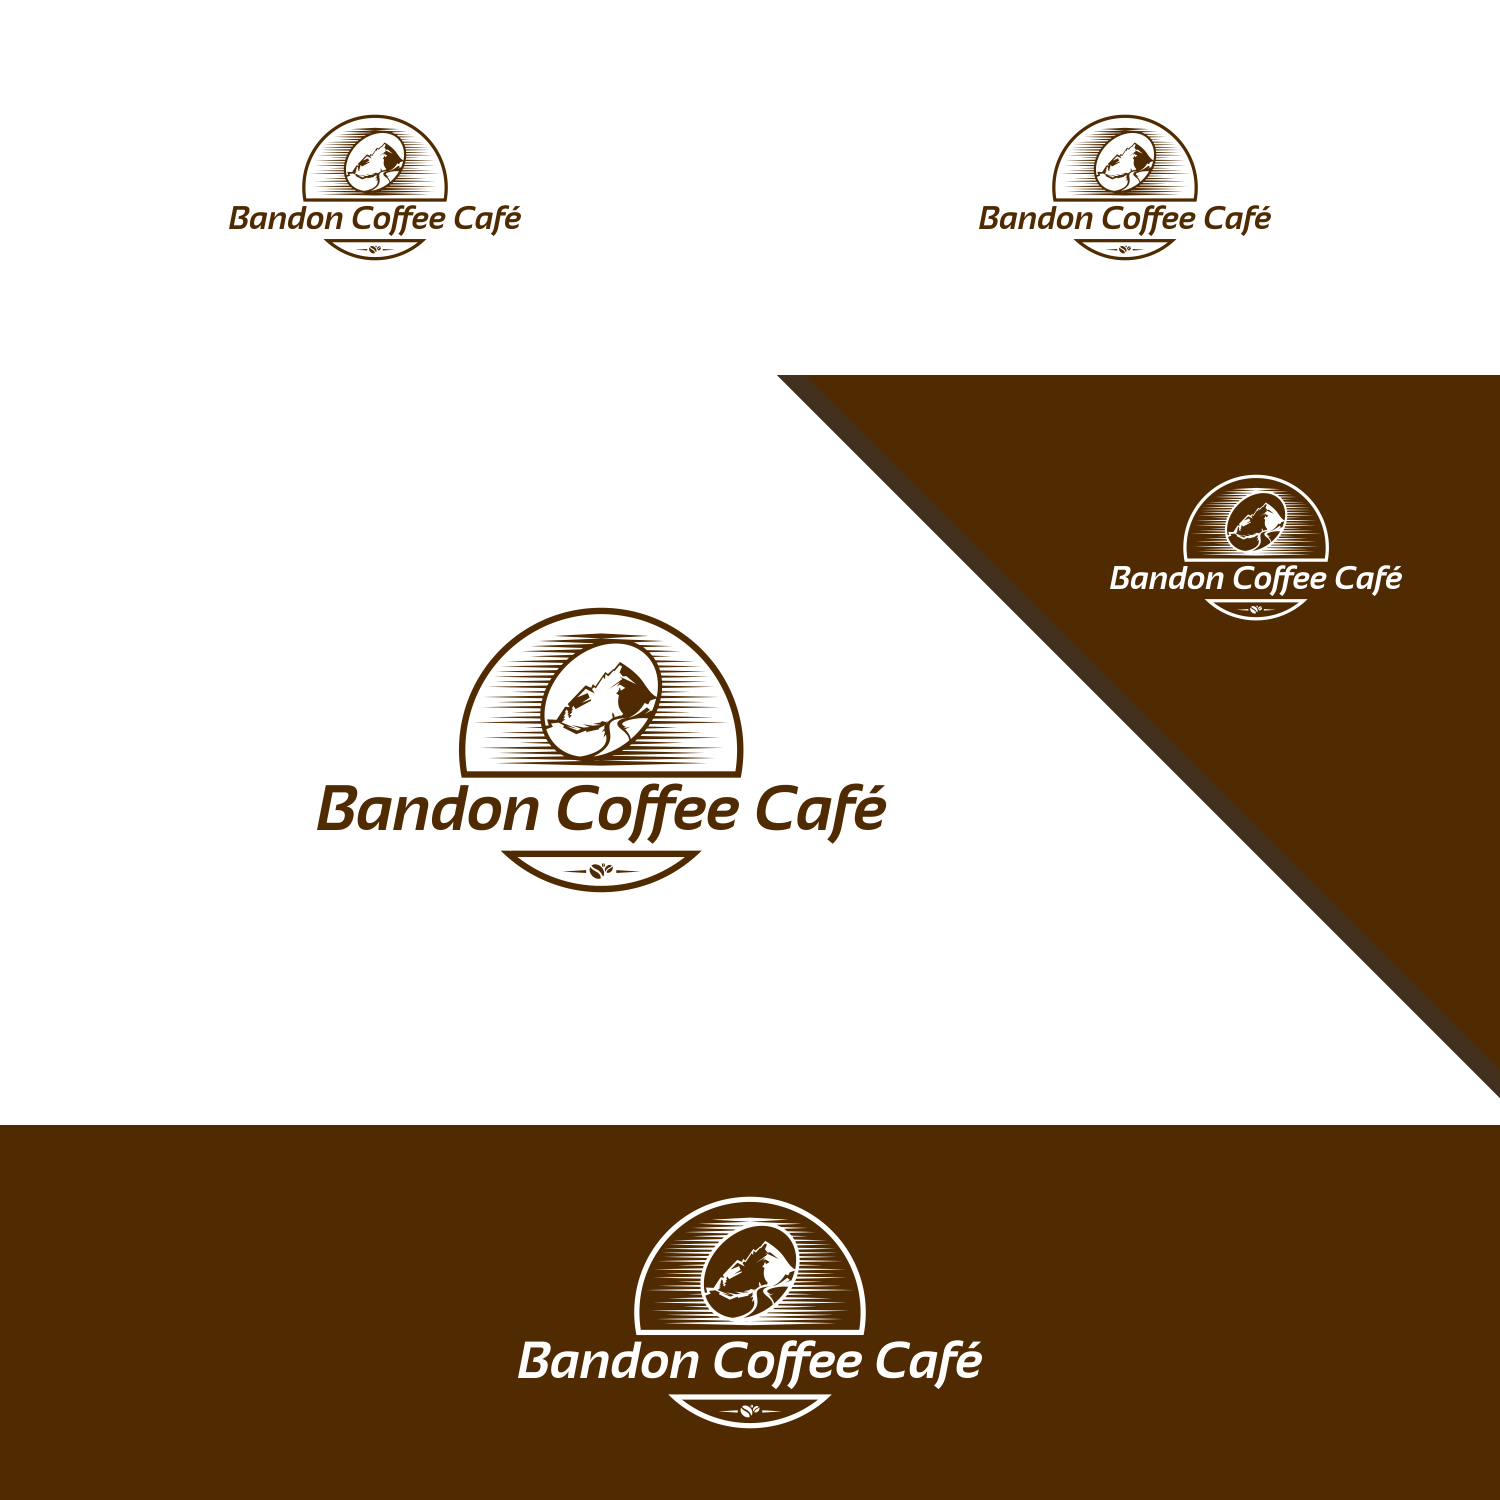 Bandon Logo - Bold, Conservative, Coffee Shop Logo Design for Bandon Coffee Cafe ...